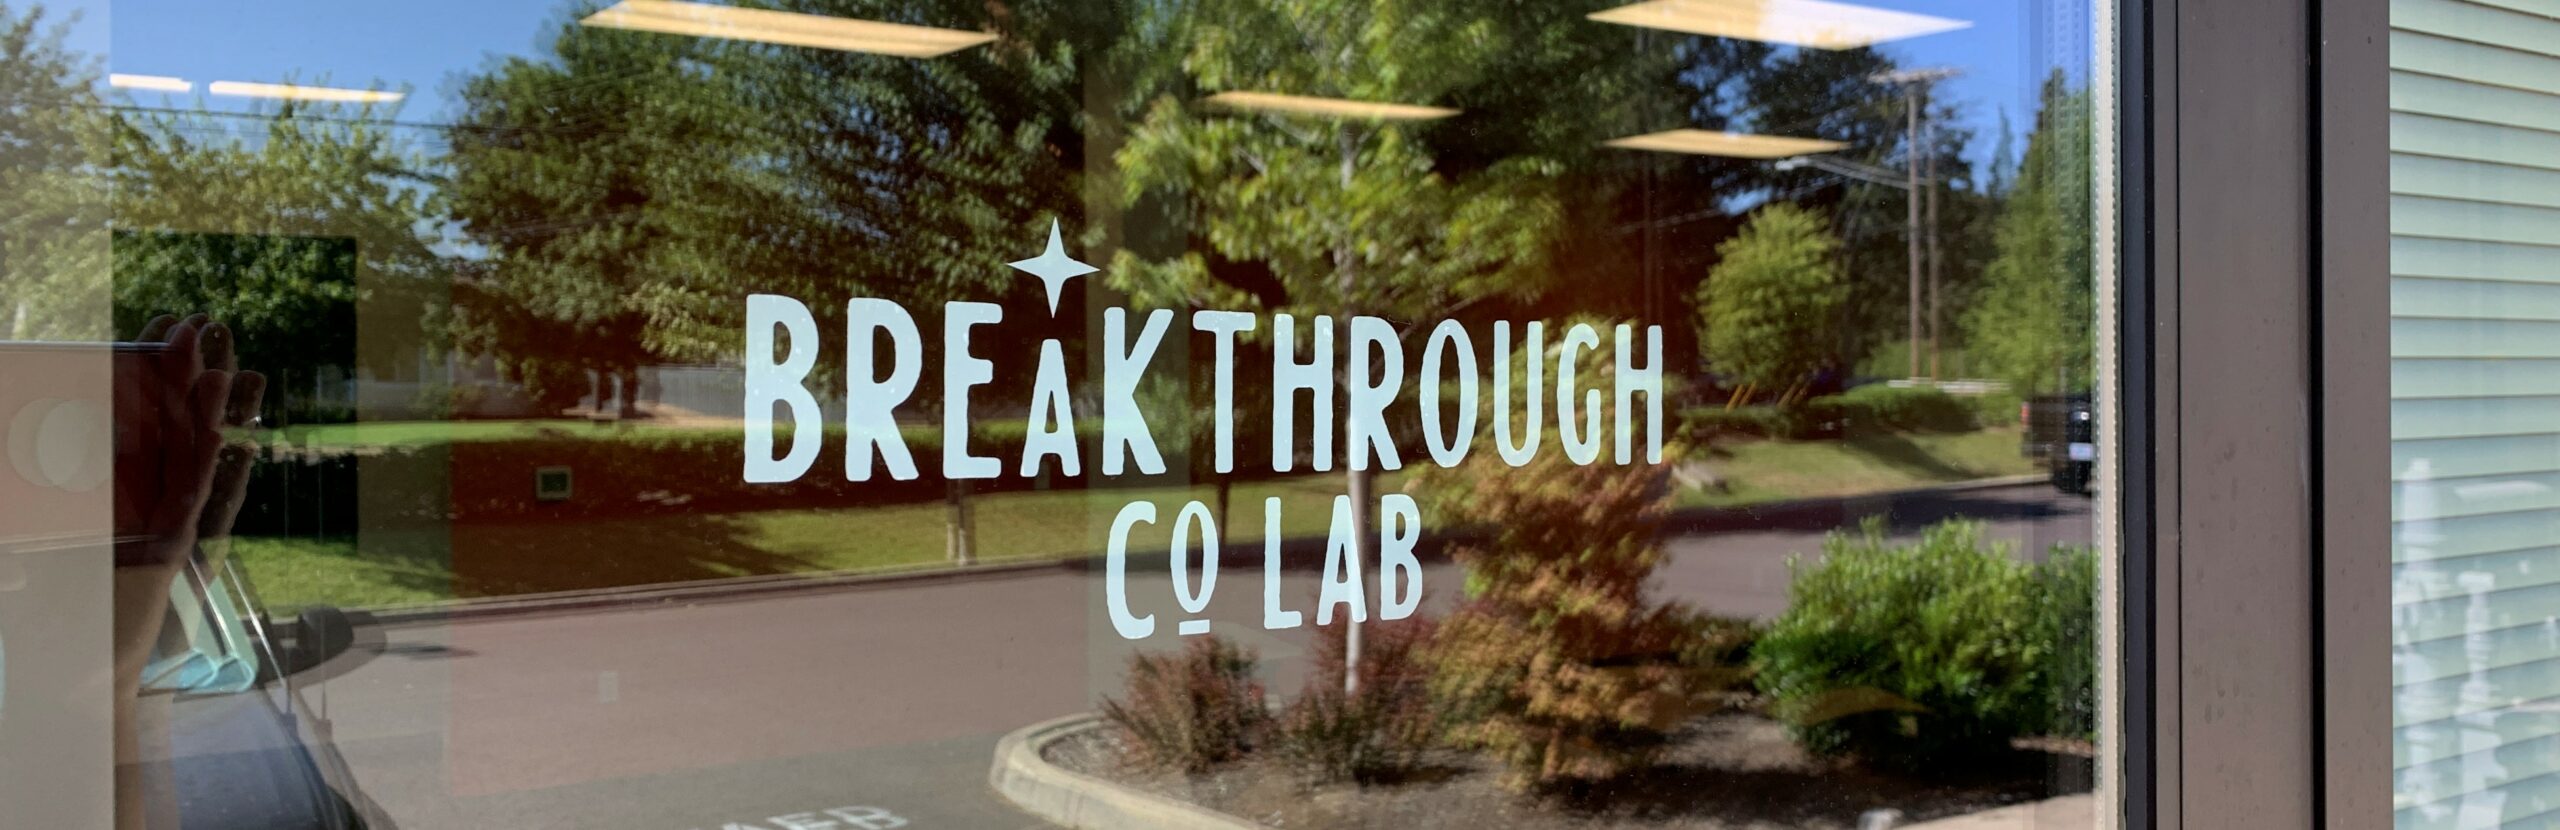 Breathrough Co Lab Logo